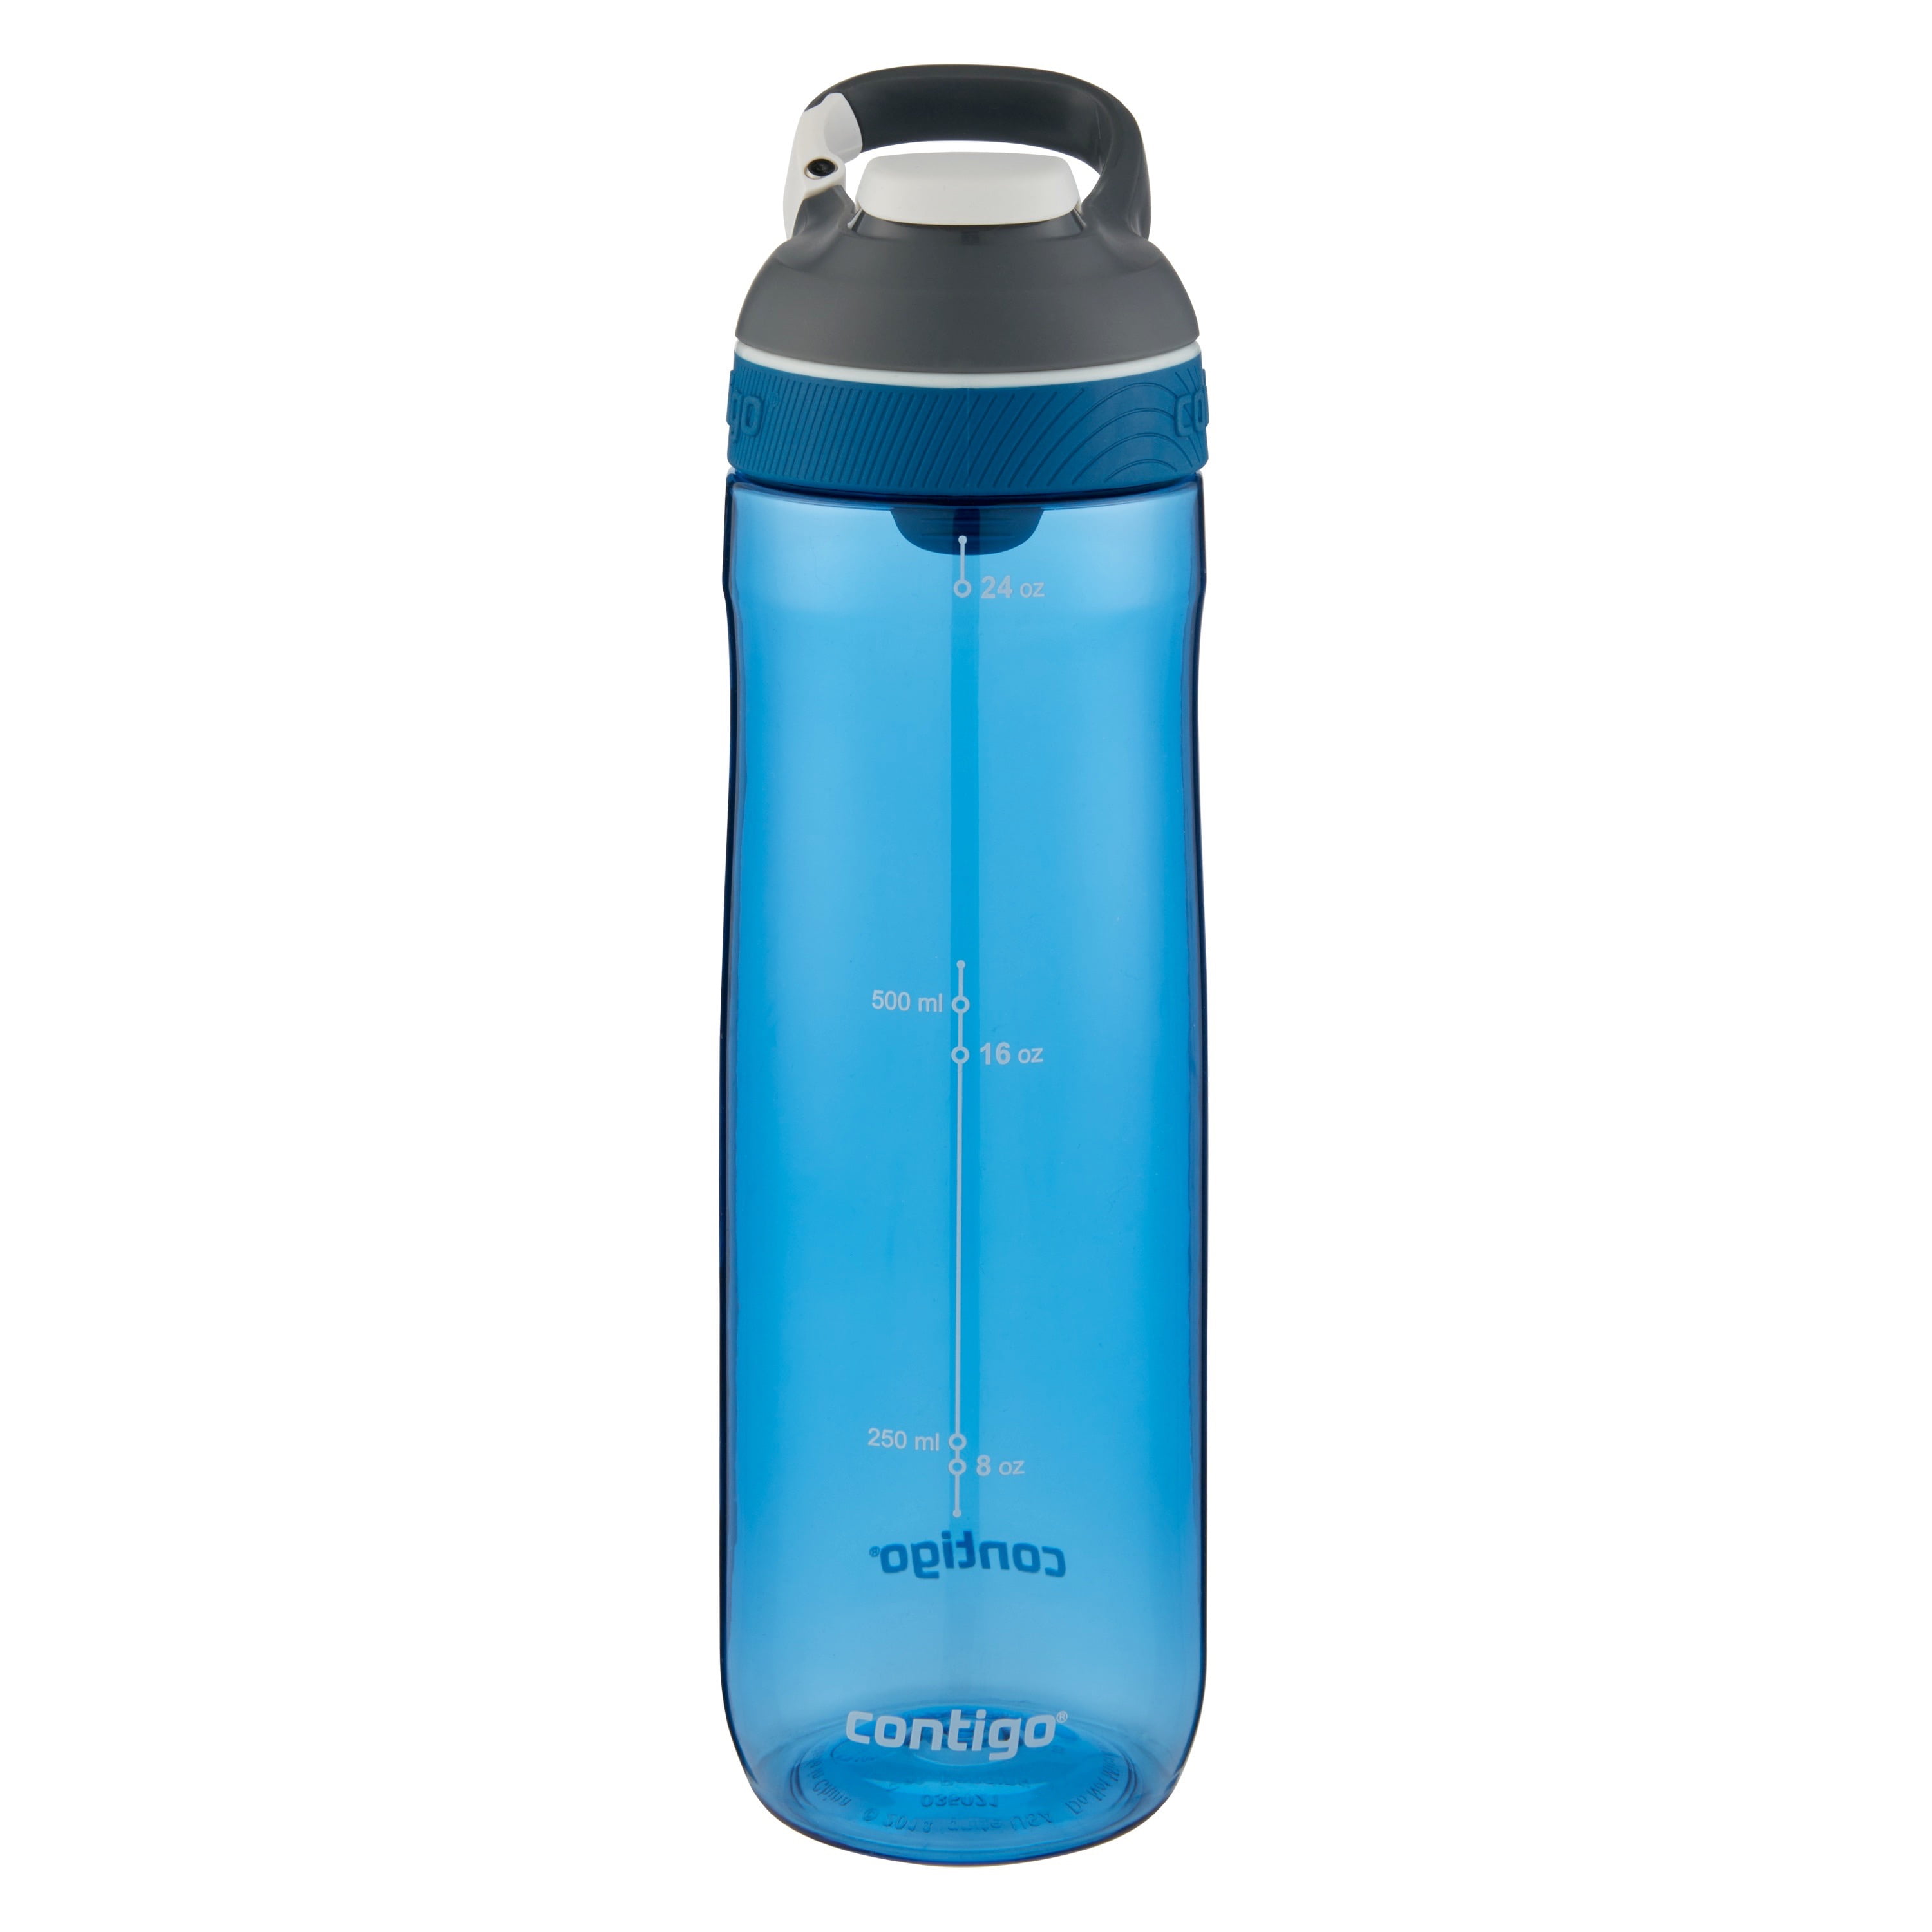 Cortland Autoseal Water Bottle Contigo 24 oz Monaco/Dark Gray Lid 